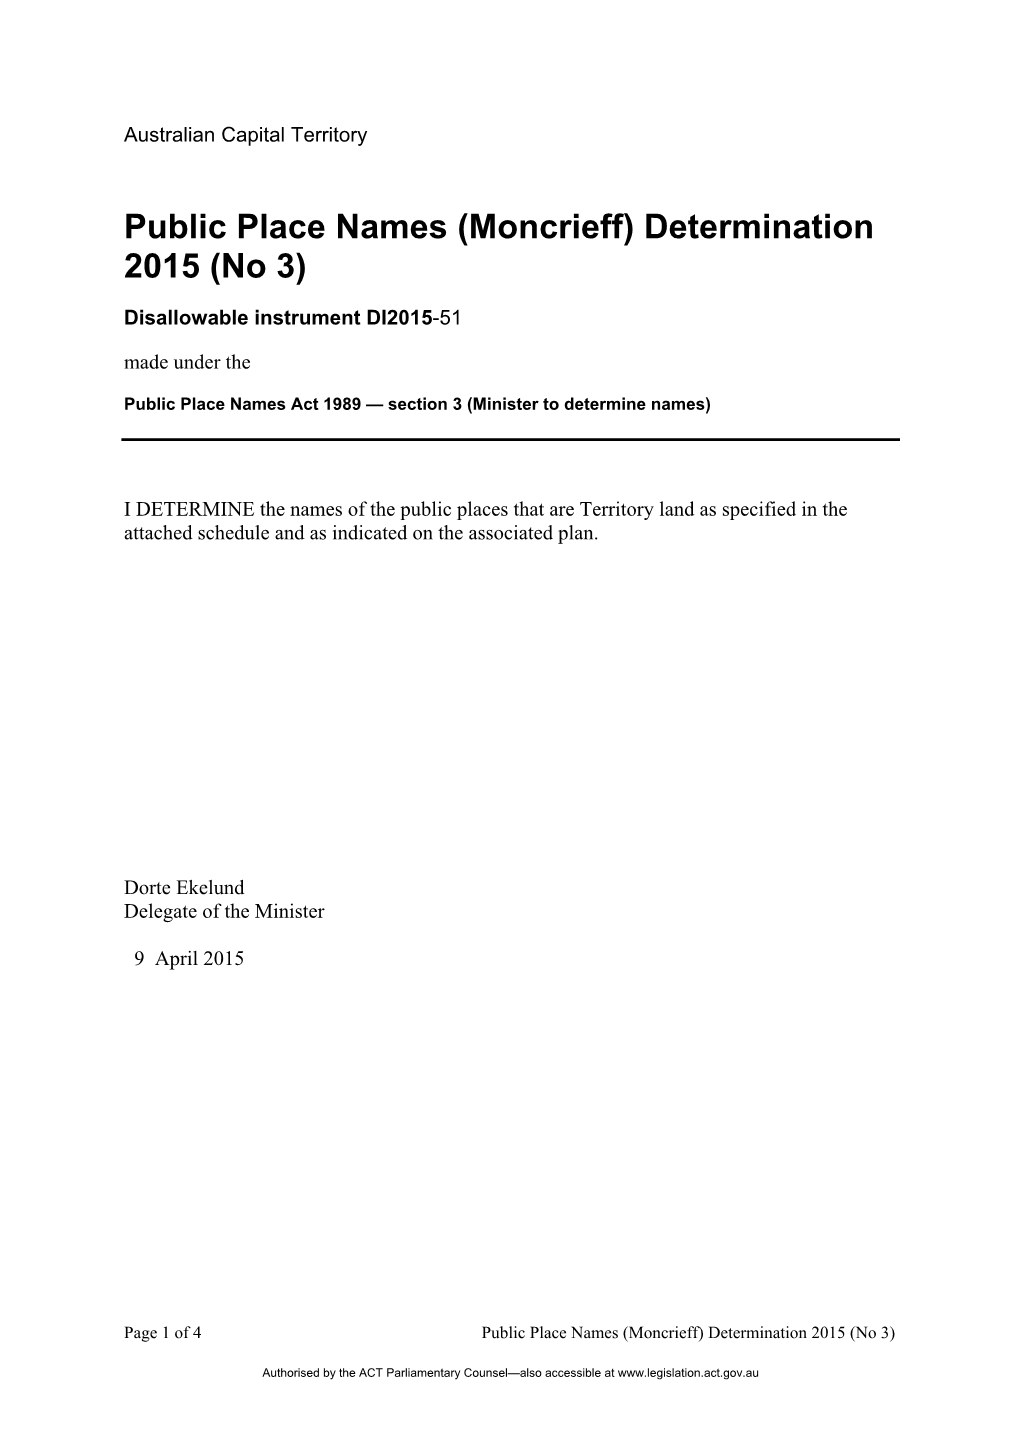 Public Place Names (Moncrieff) Determination 2015 (No 3)